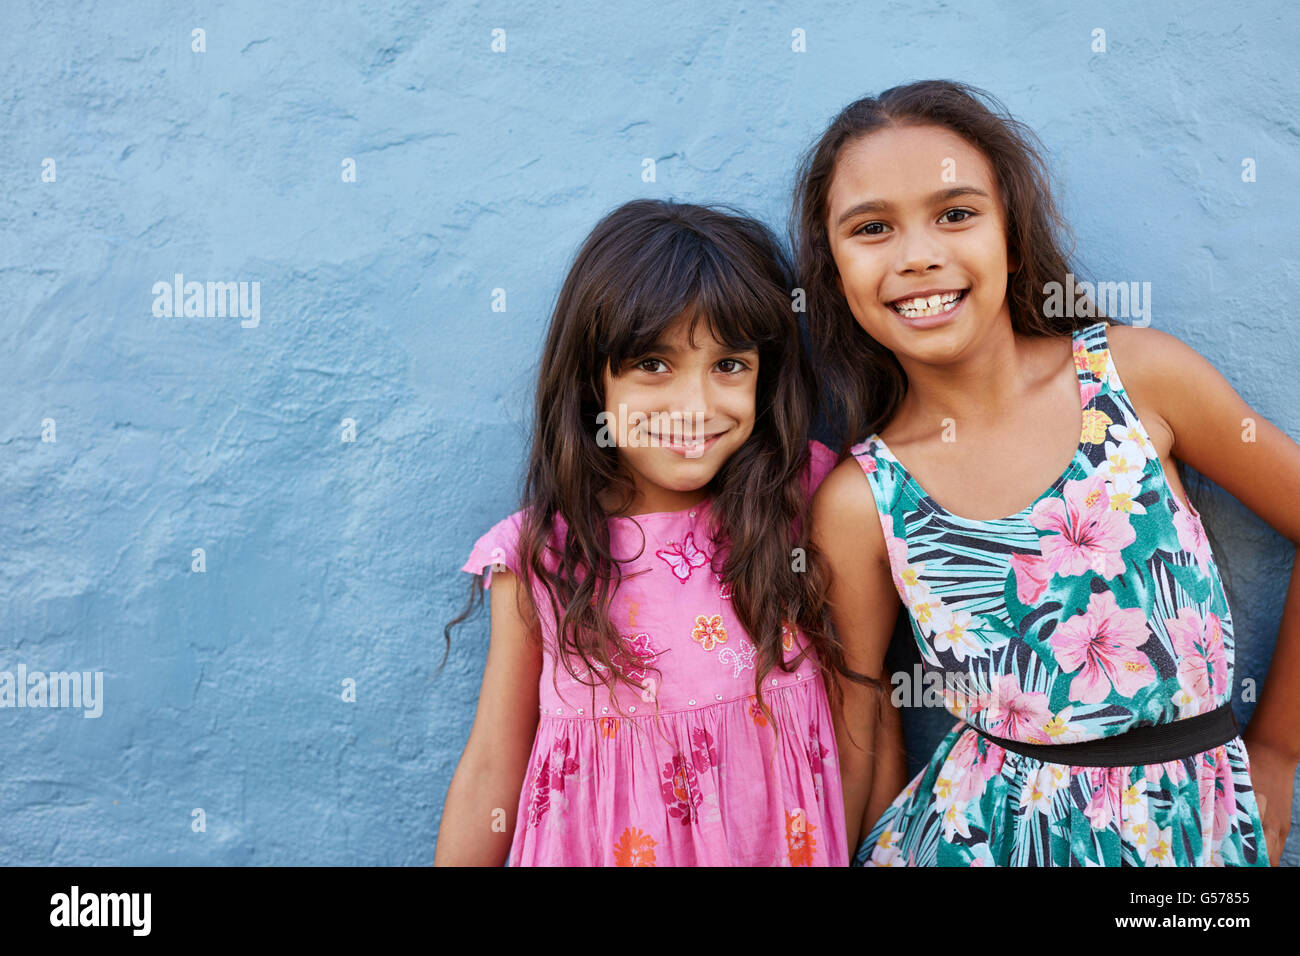 Portrait de deux petites filles se tenant ensemble contre fond bleu. Adorable petit friends posing together avec sourire mignon. Banque D'Images